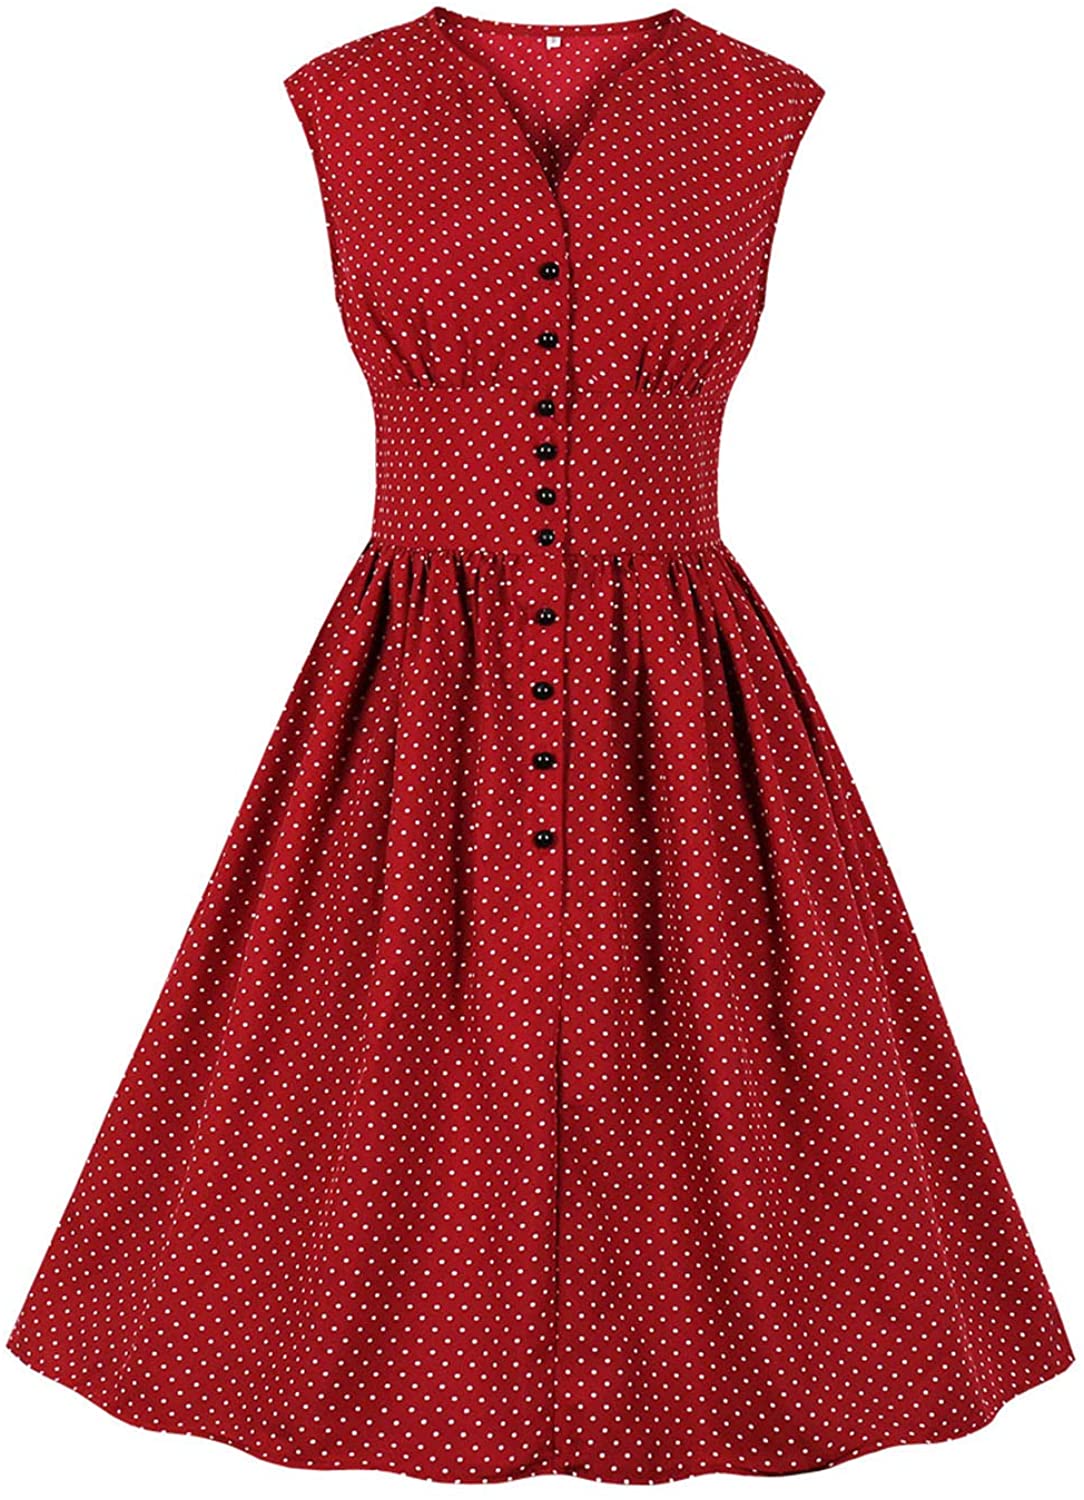 Price:$0.00 Women's Vintage 1950s Tea Dress Floral Rockabilly Swing ...